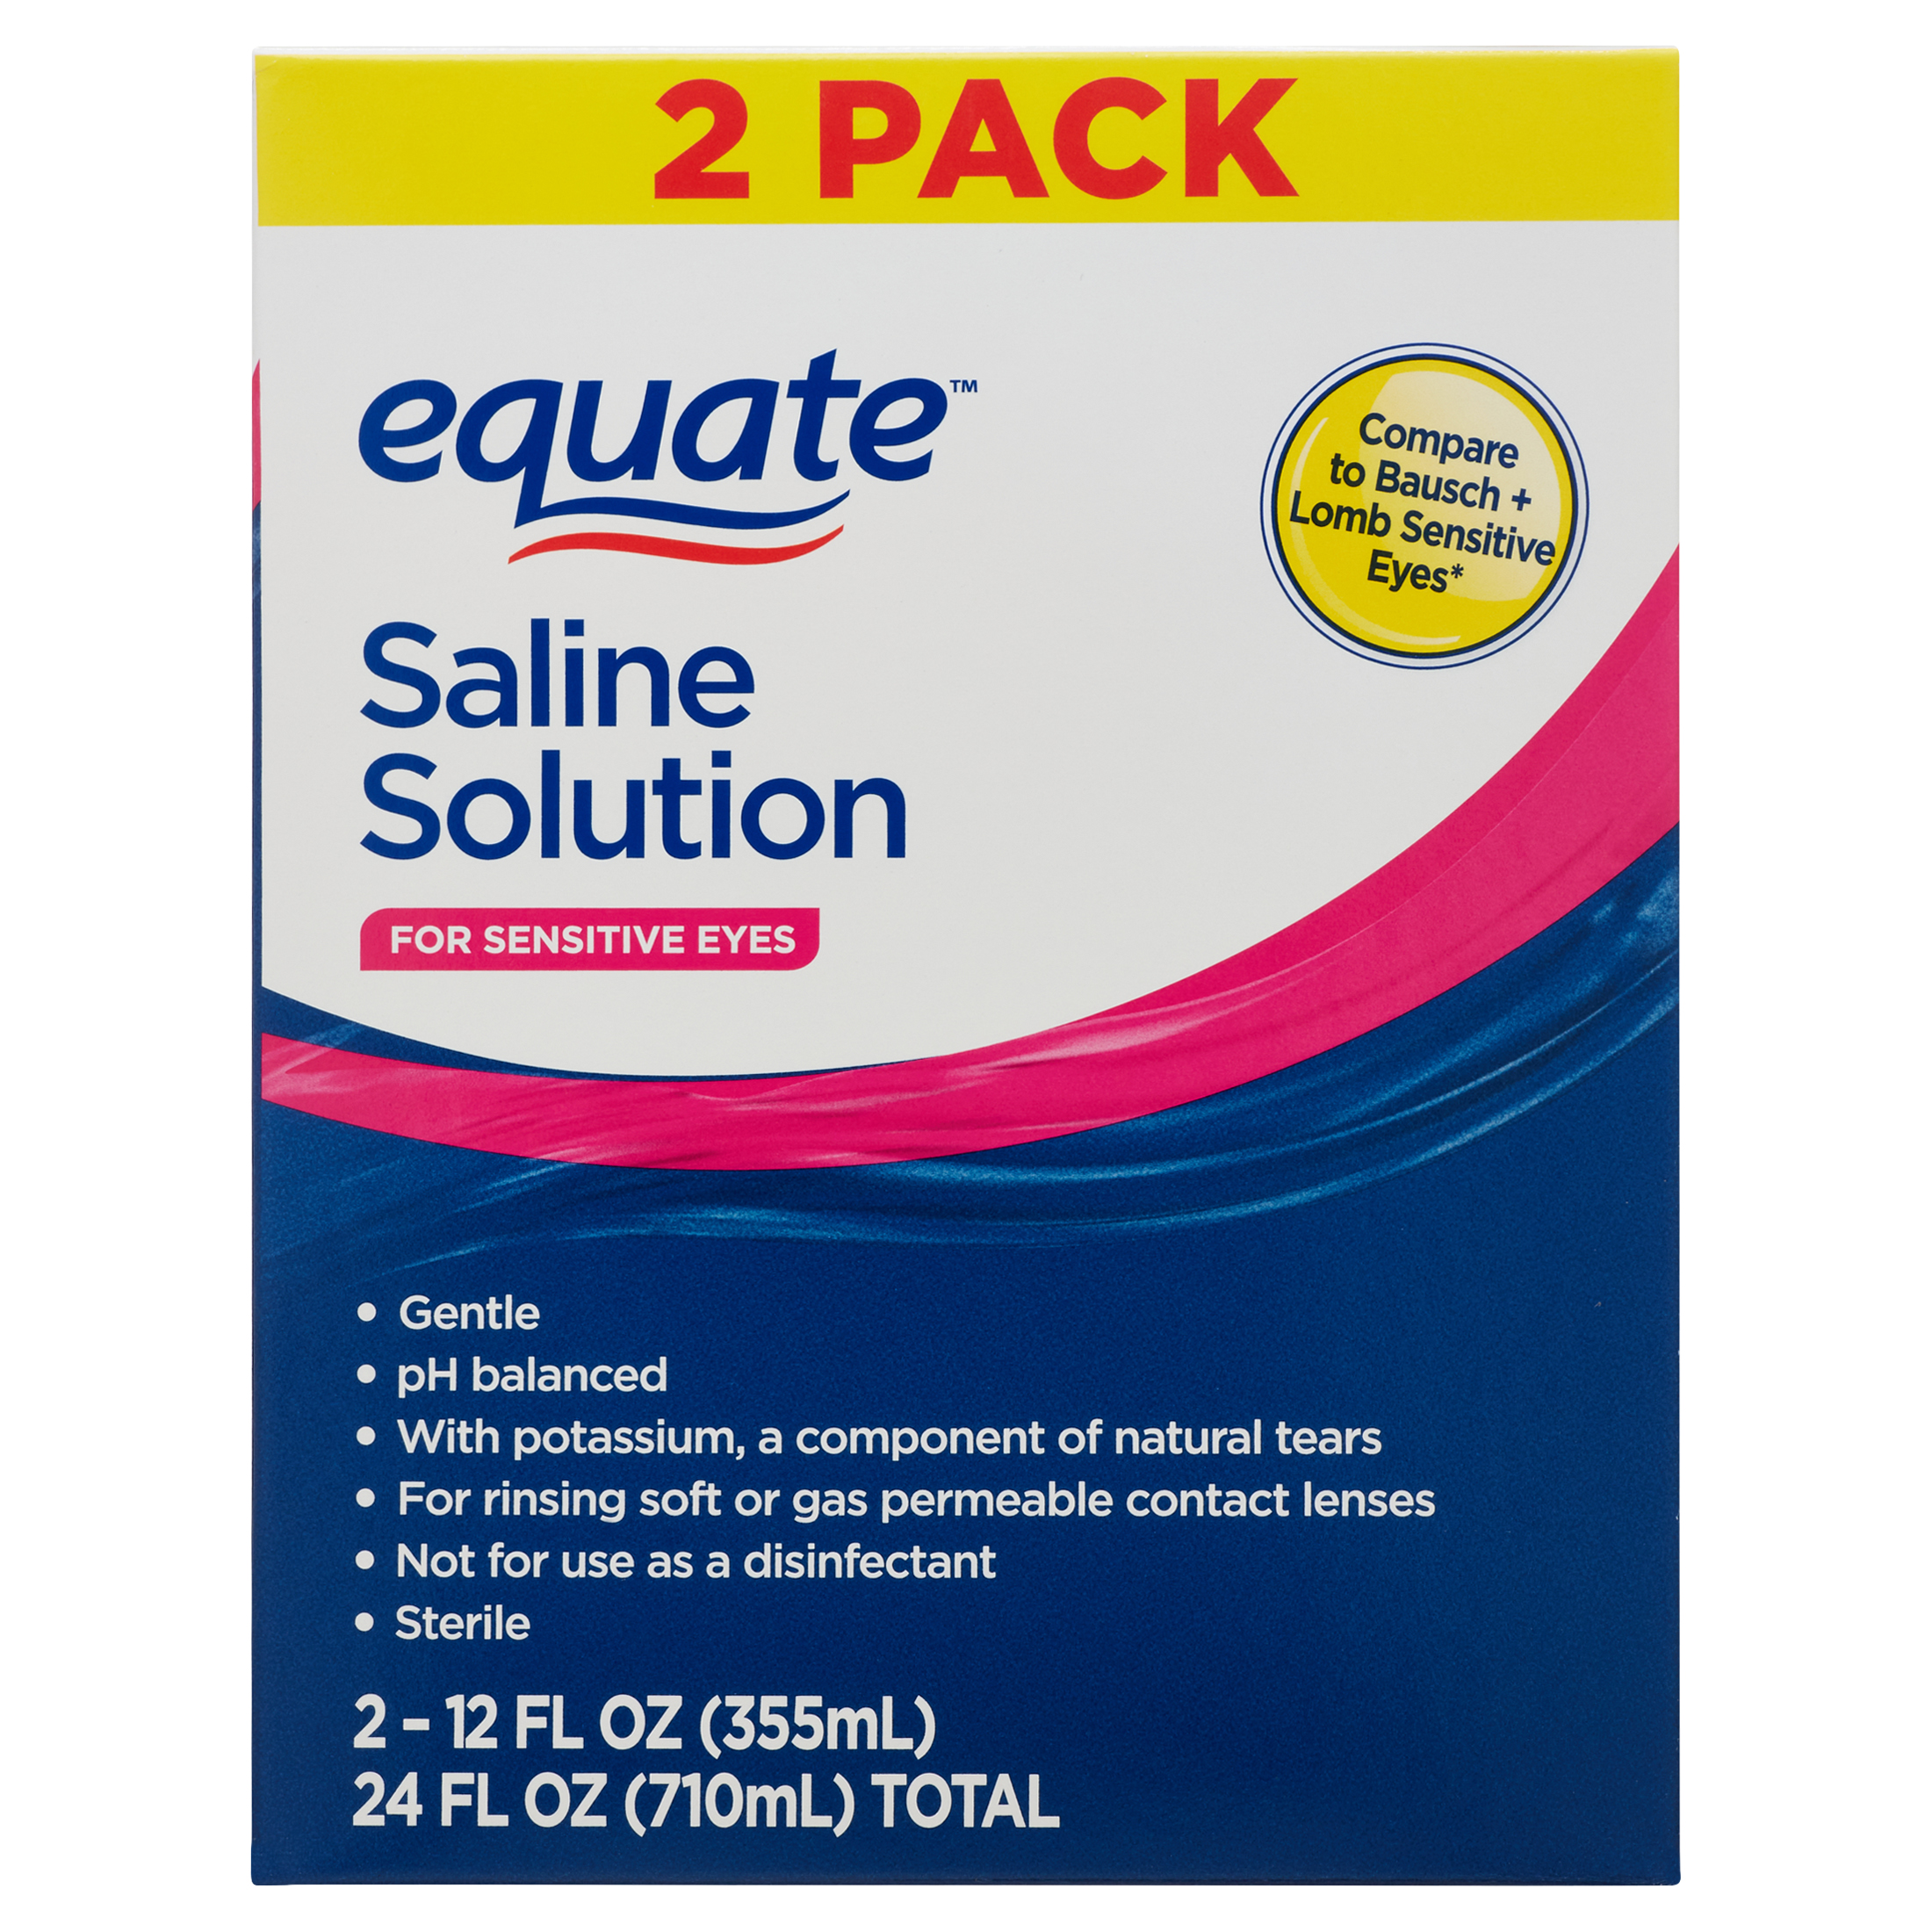 Equate Saline Solution For Sensitive Eyes, 12 fl oz, 2 Pack - image 1 of 9